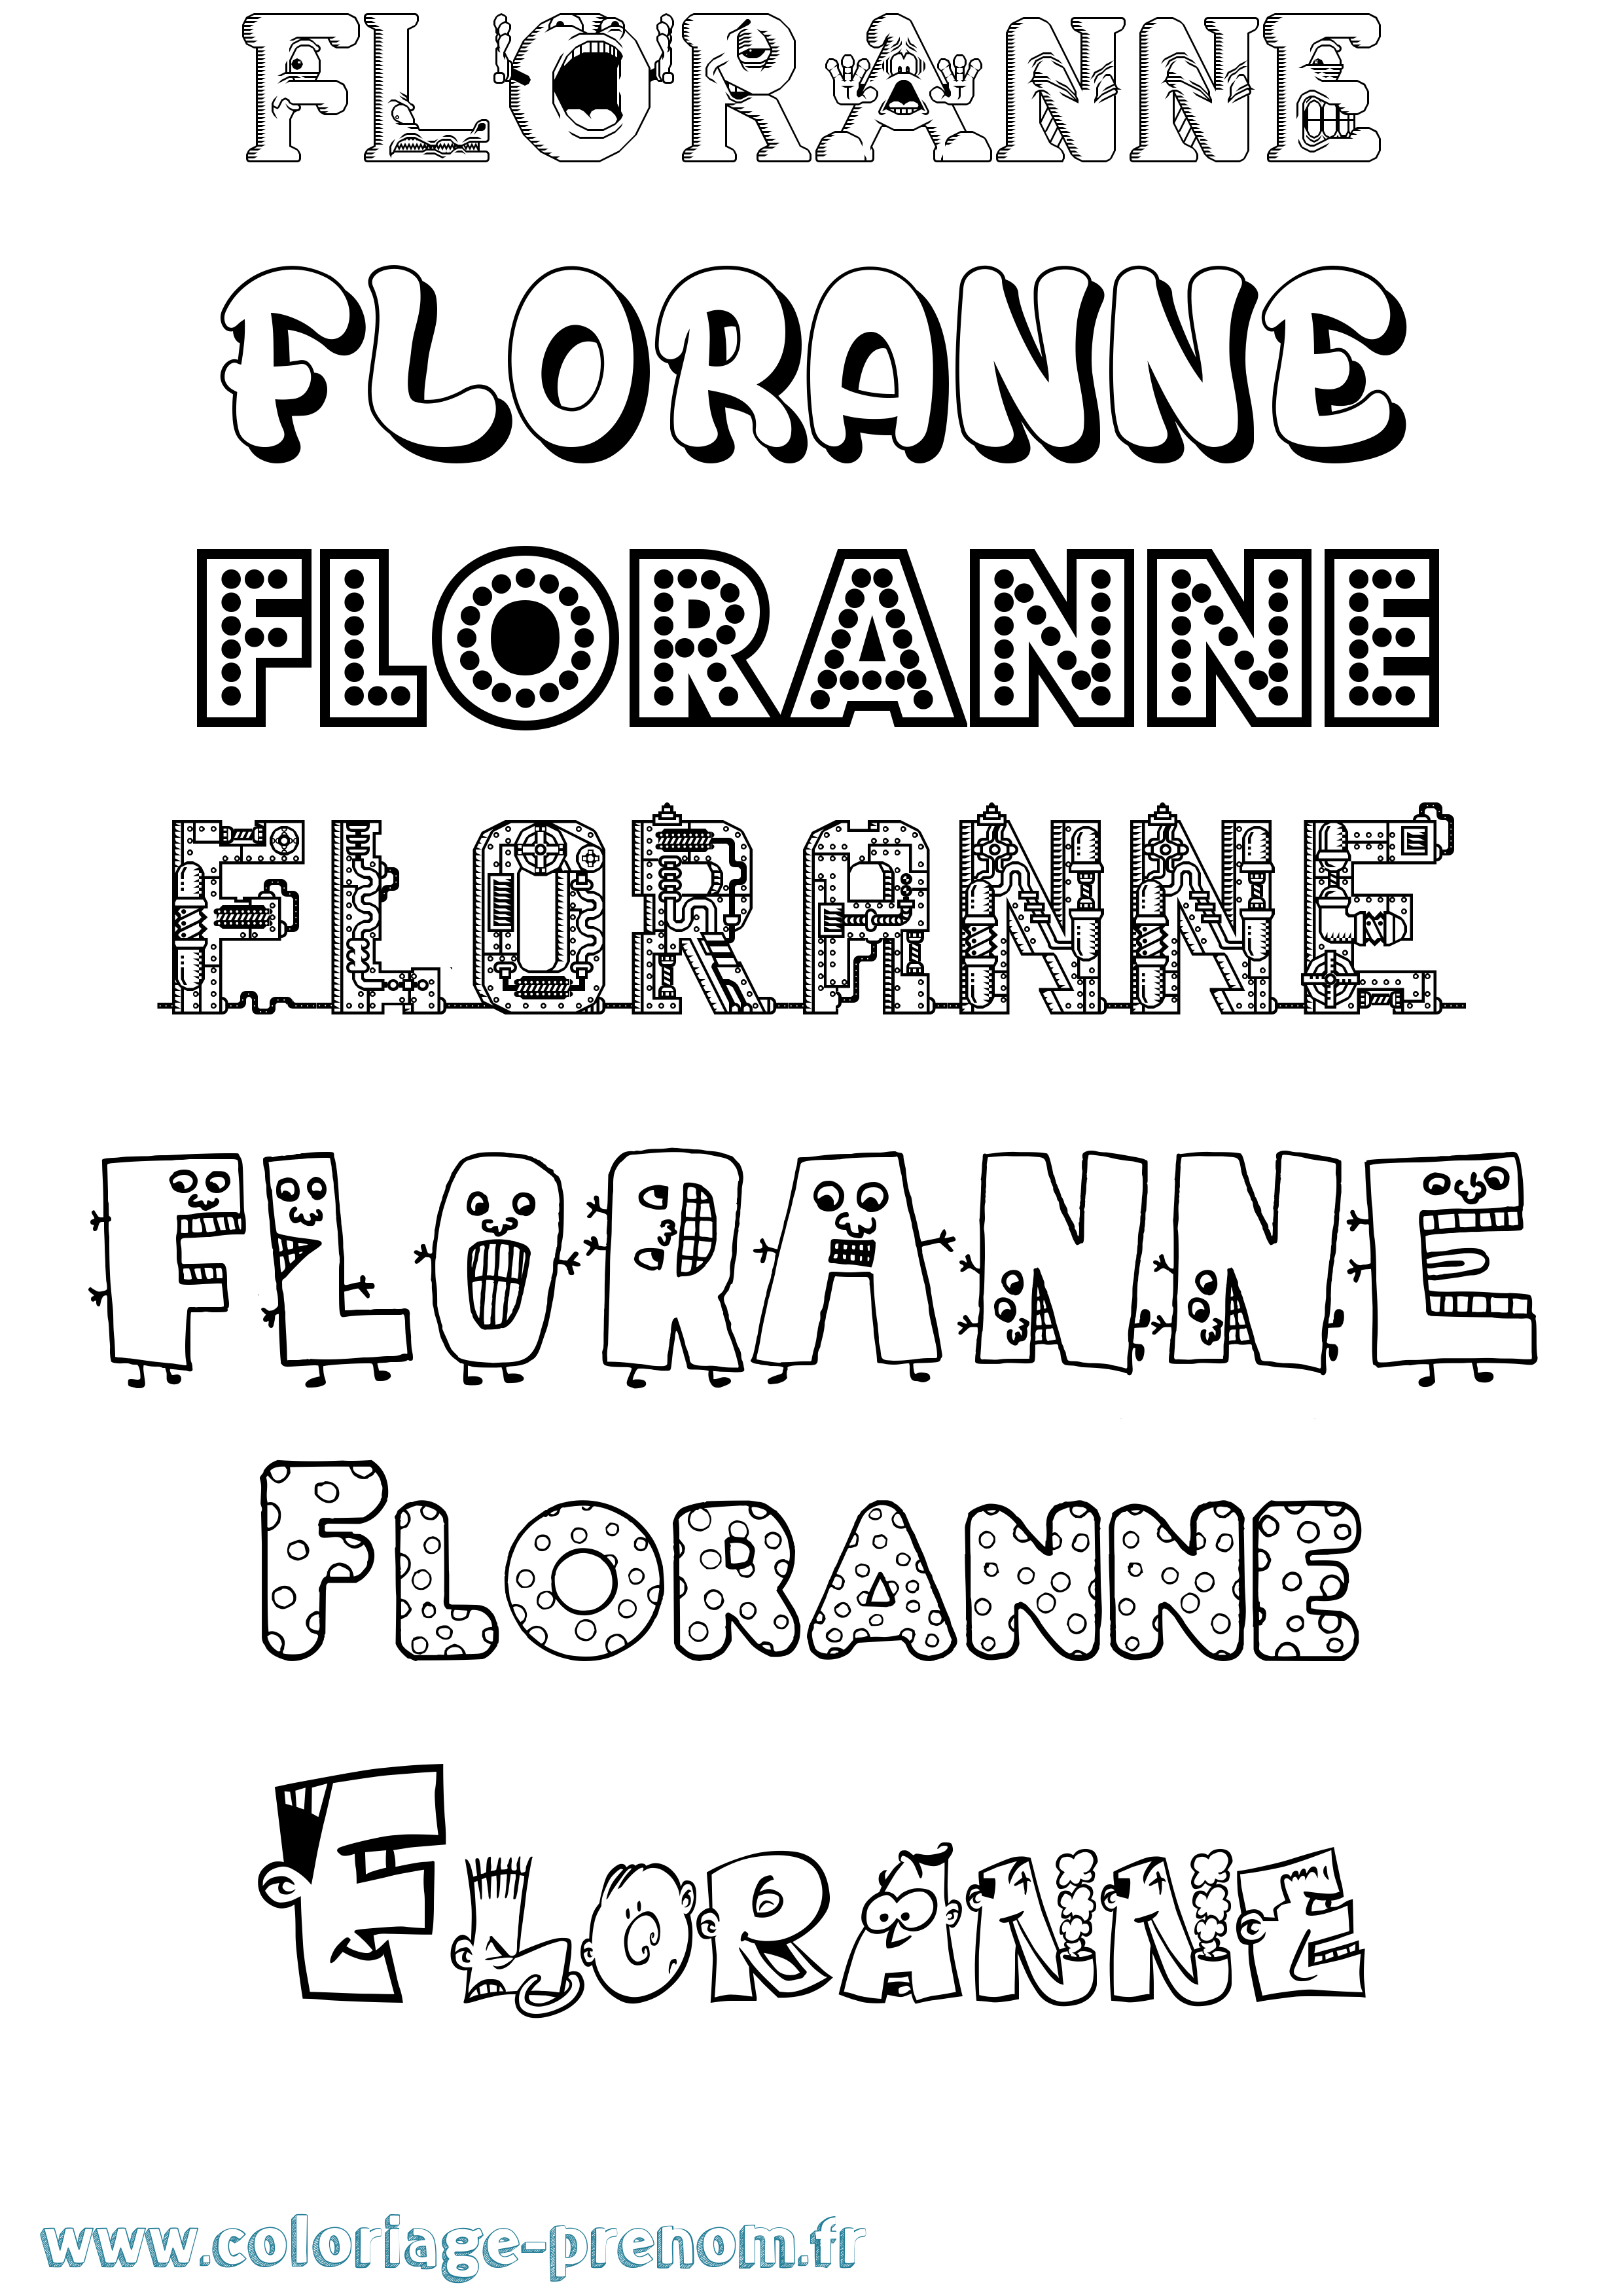 Coloriage prénom Floranne Fun